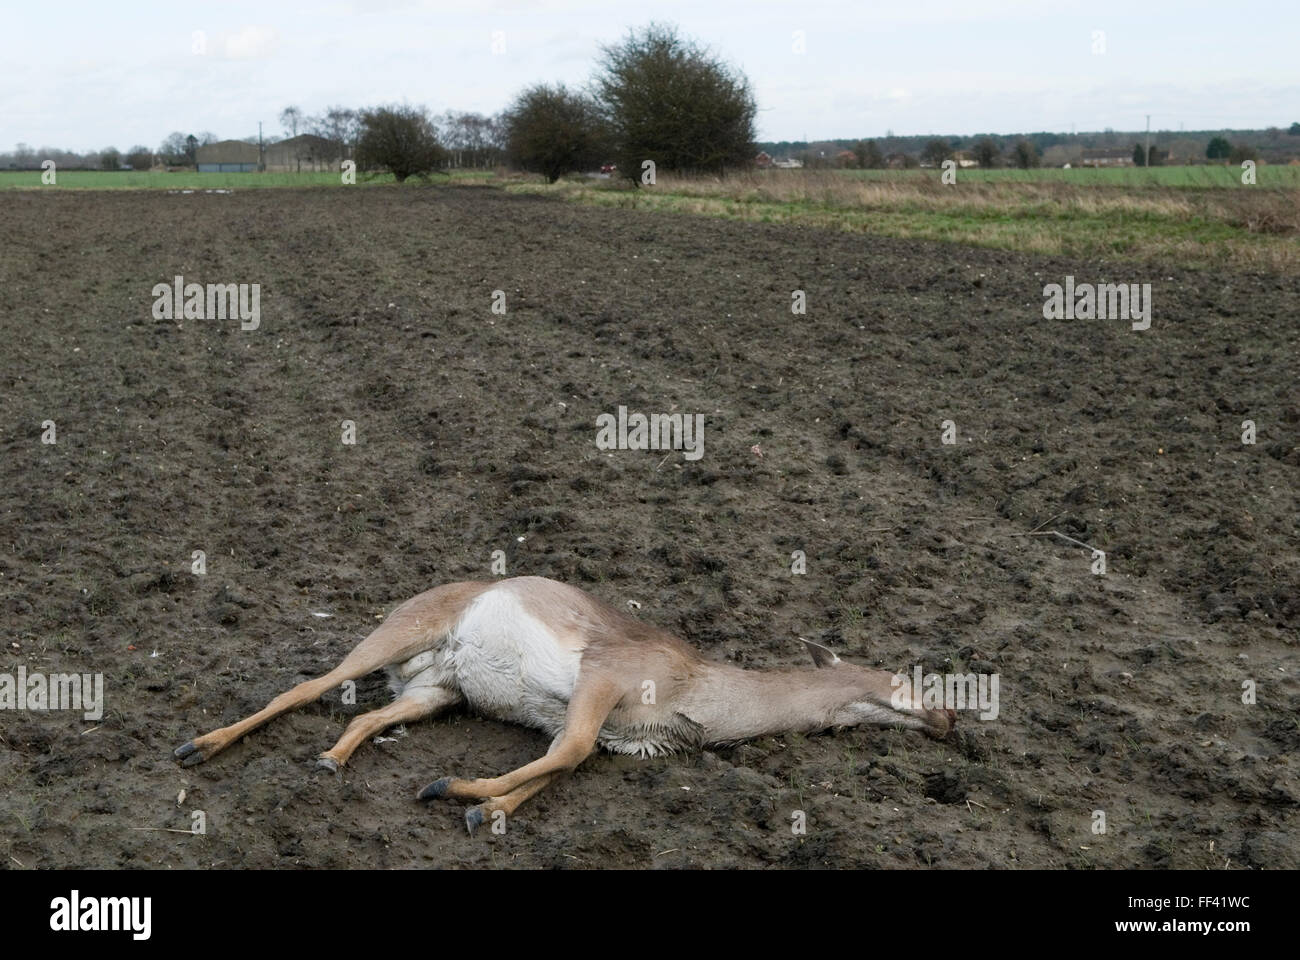 Roe Deer tot Landschaft Oxfordshire, wahrscheinlich getötet, von einem vorbeifahrenden Auto getroffen und dann in diesem nahe gelegenen Feld gestaffelt und starb. UK 2016 HOMER SYKES Stockfoto